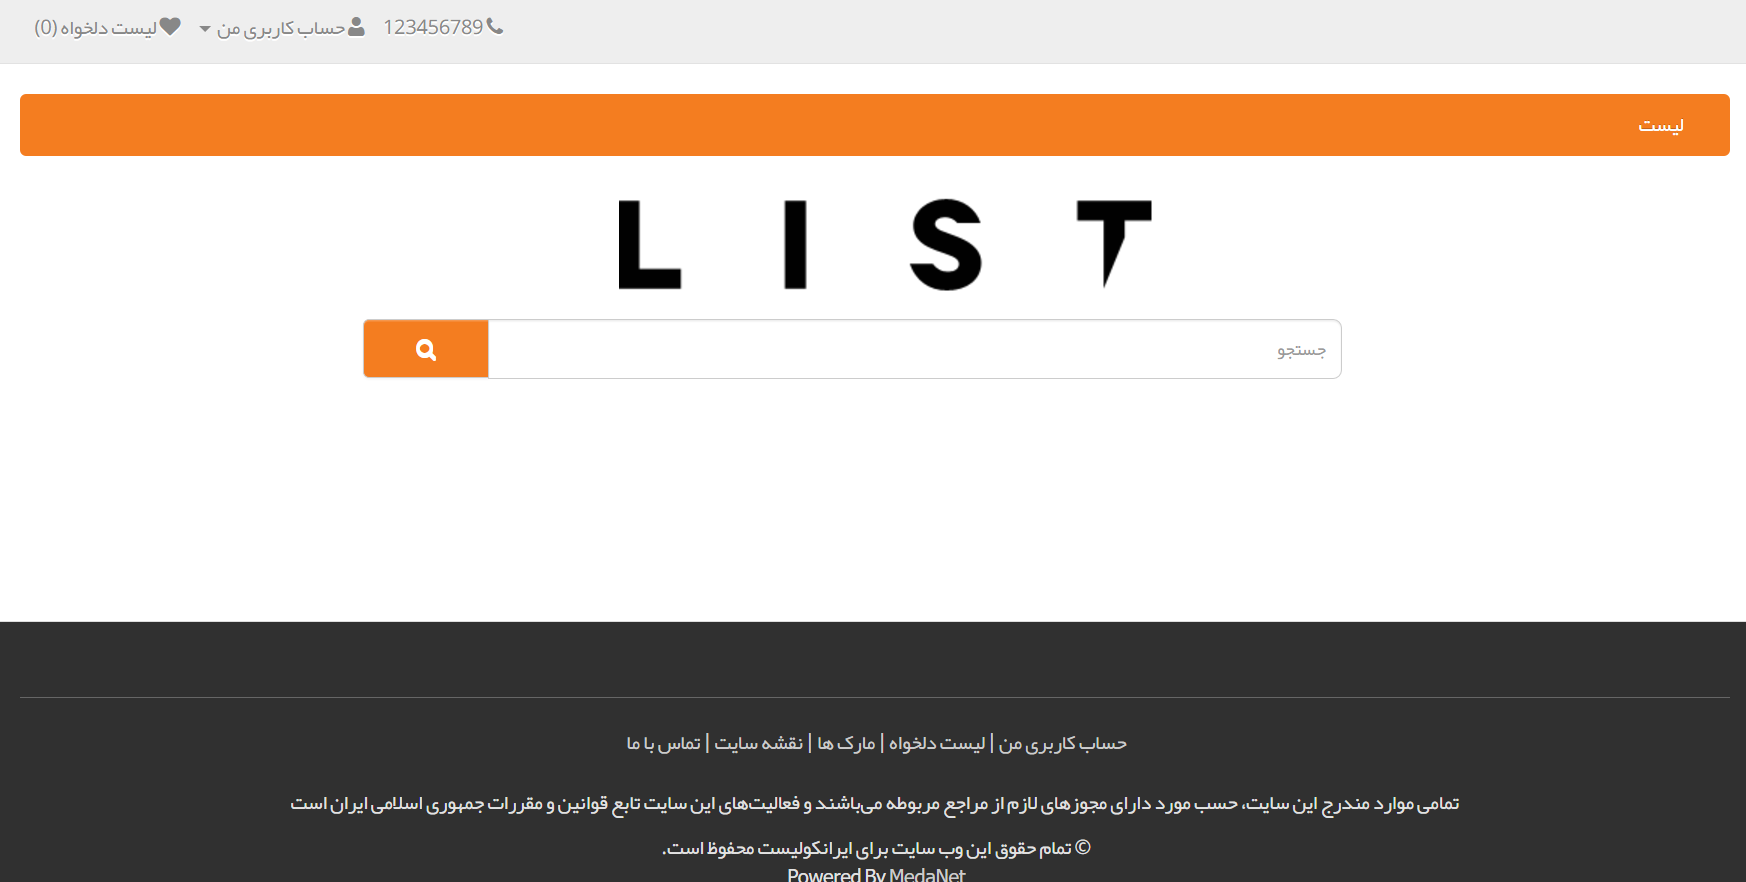 وب سایت ایرانکولیست لیست شرکت ها فناوری اطلاعات